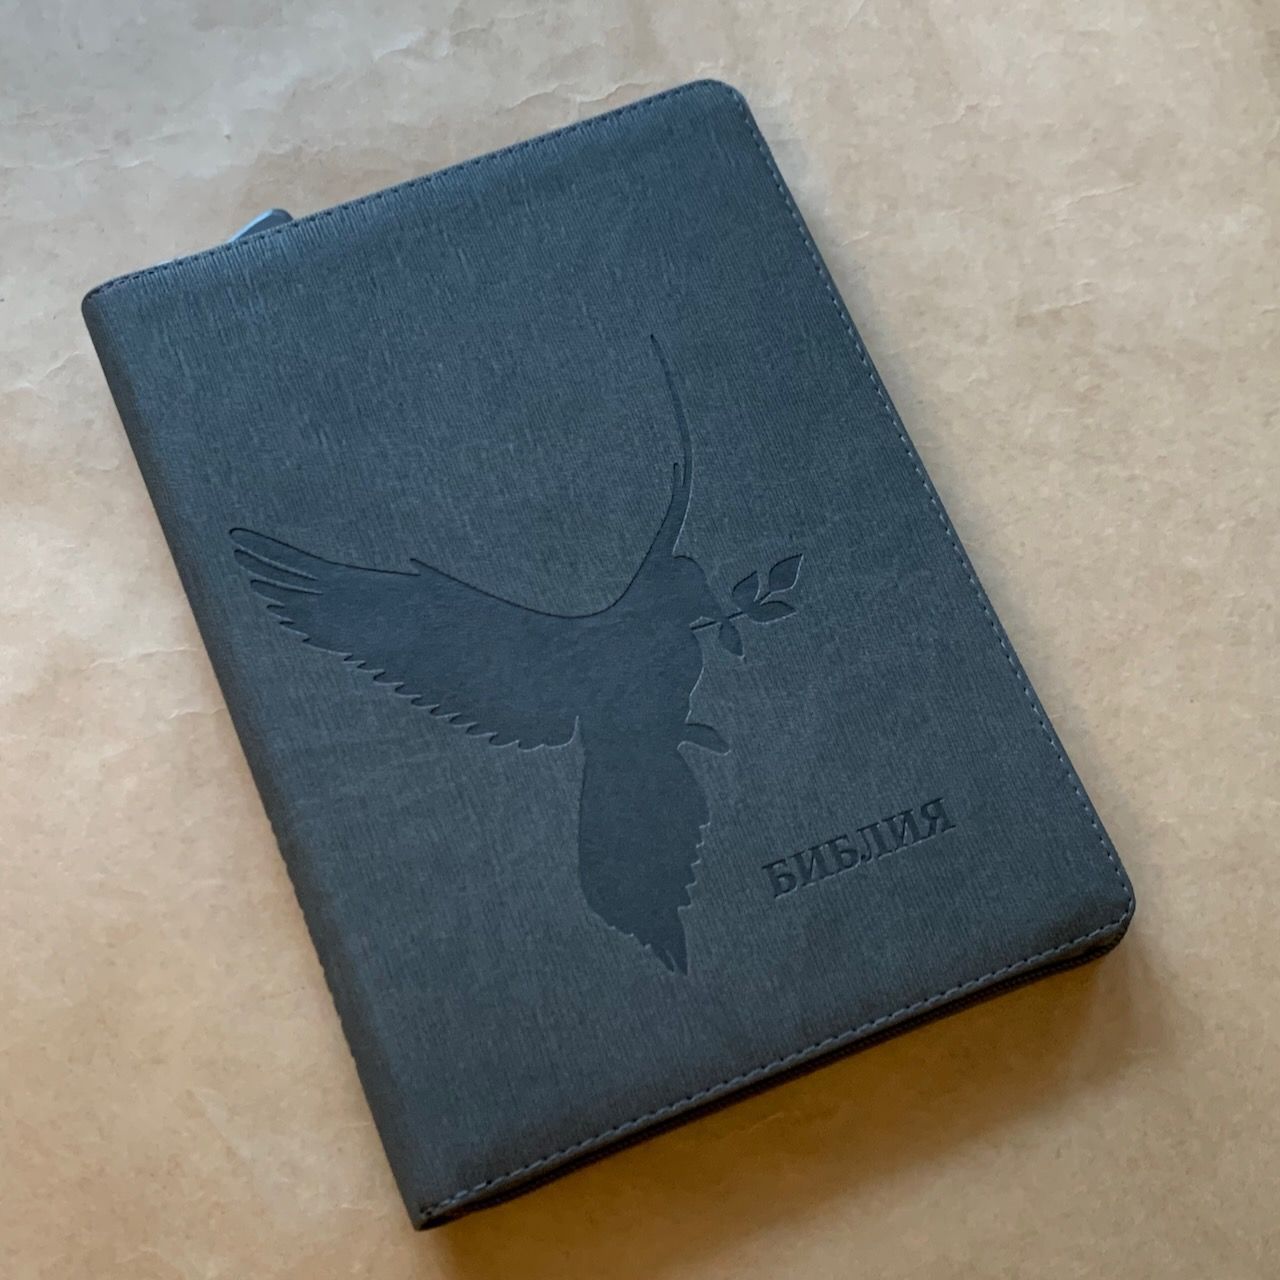 Библия 076z код F2, дизайн "голубь", переплет из искусственной кожи на молнии, цвет серый графит ребристый, размер 180x243 мм